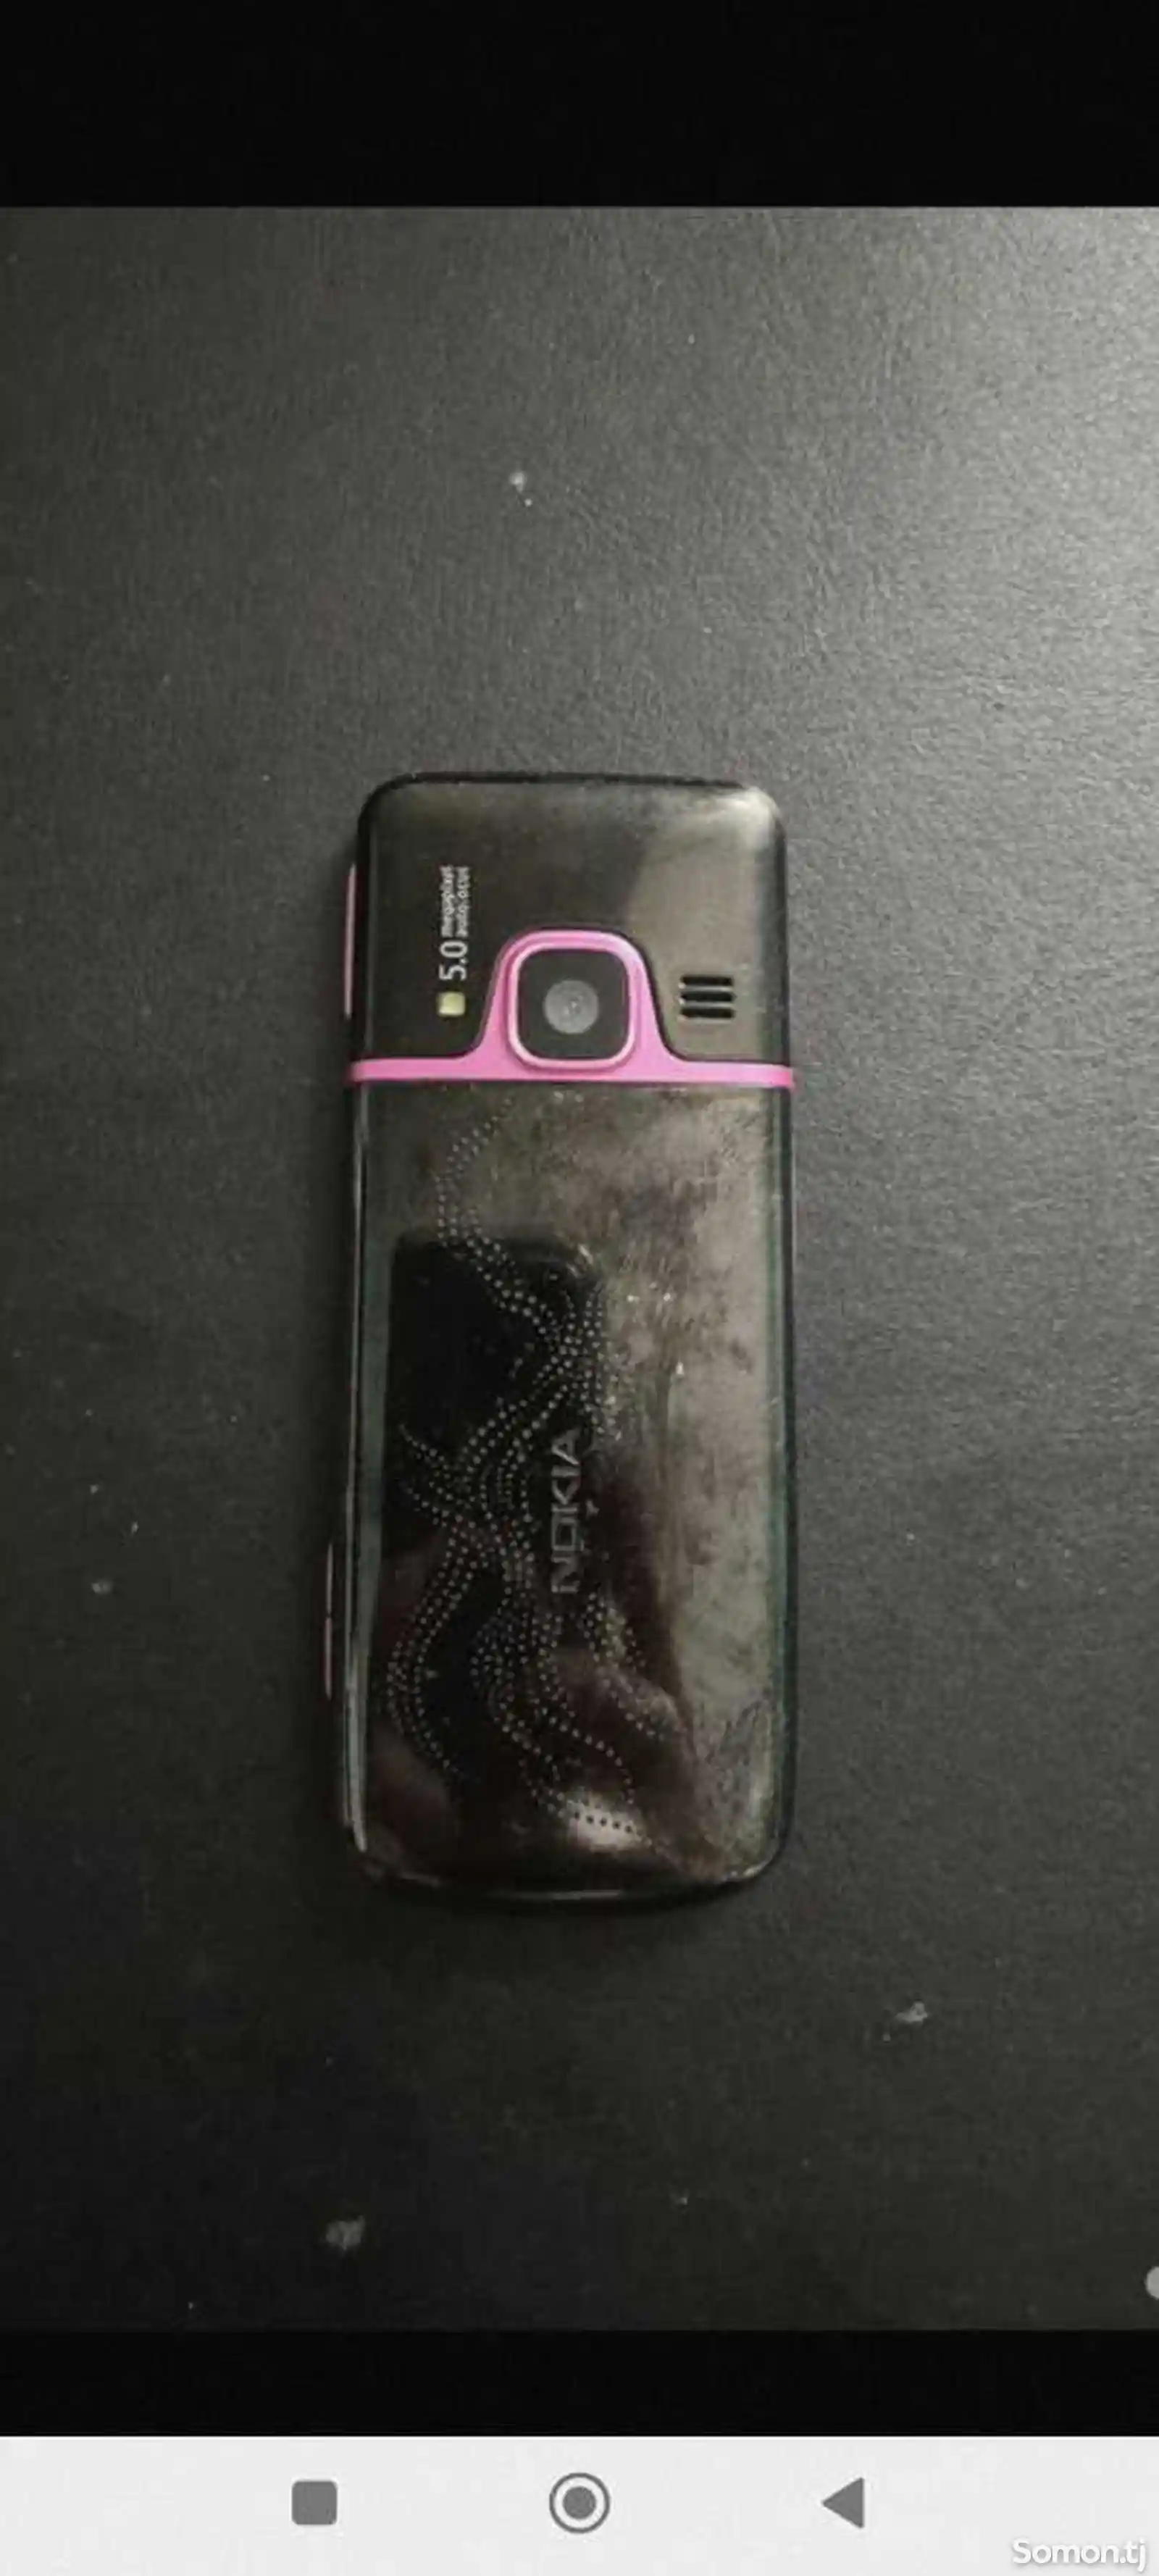 Nokia 6700-1